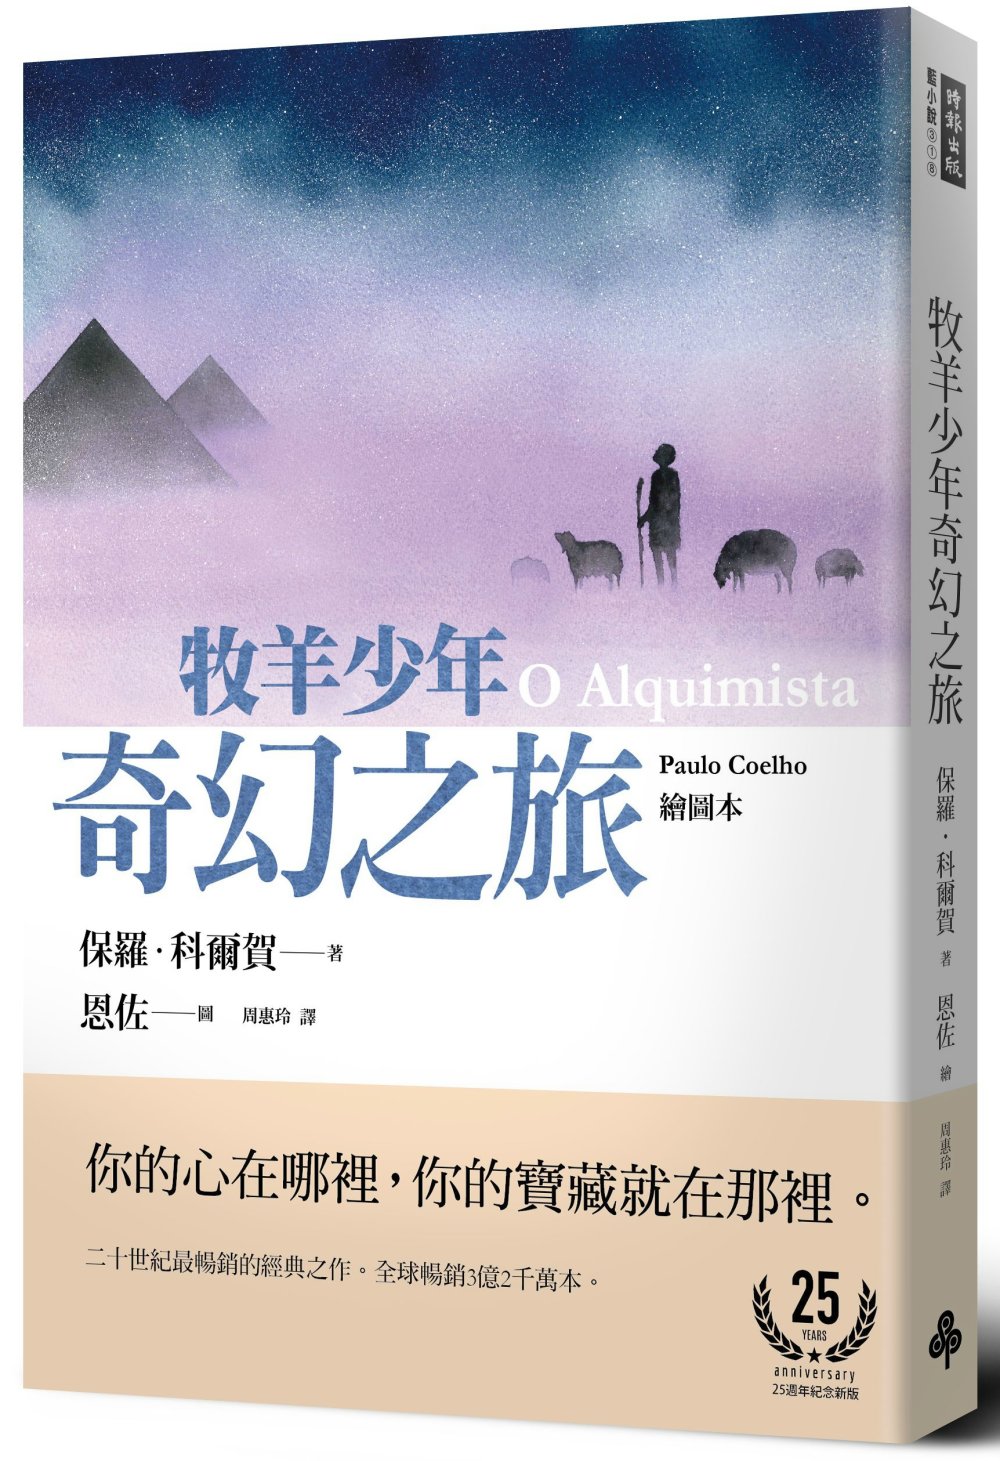 牧羊少年奇幻之旅【繪圖本】(在台暢銷50萬冊紀念版)